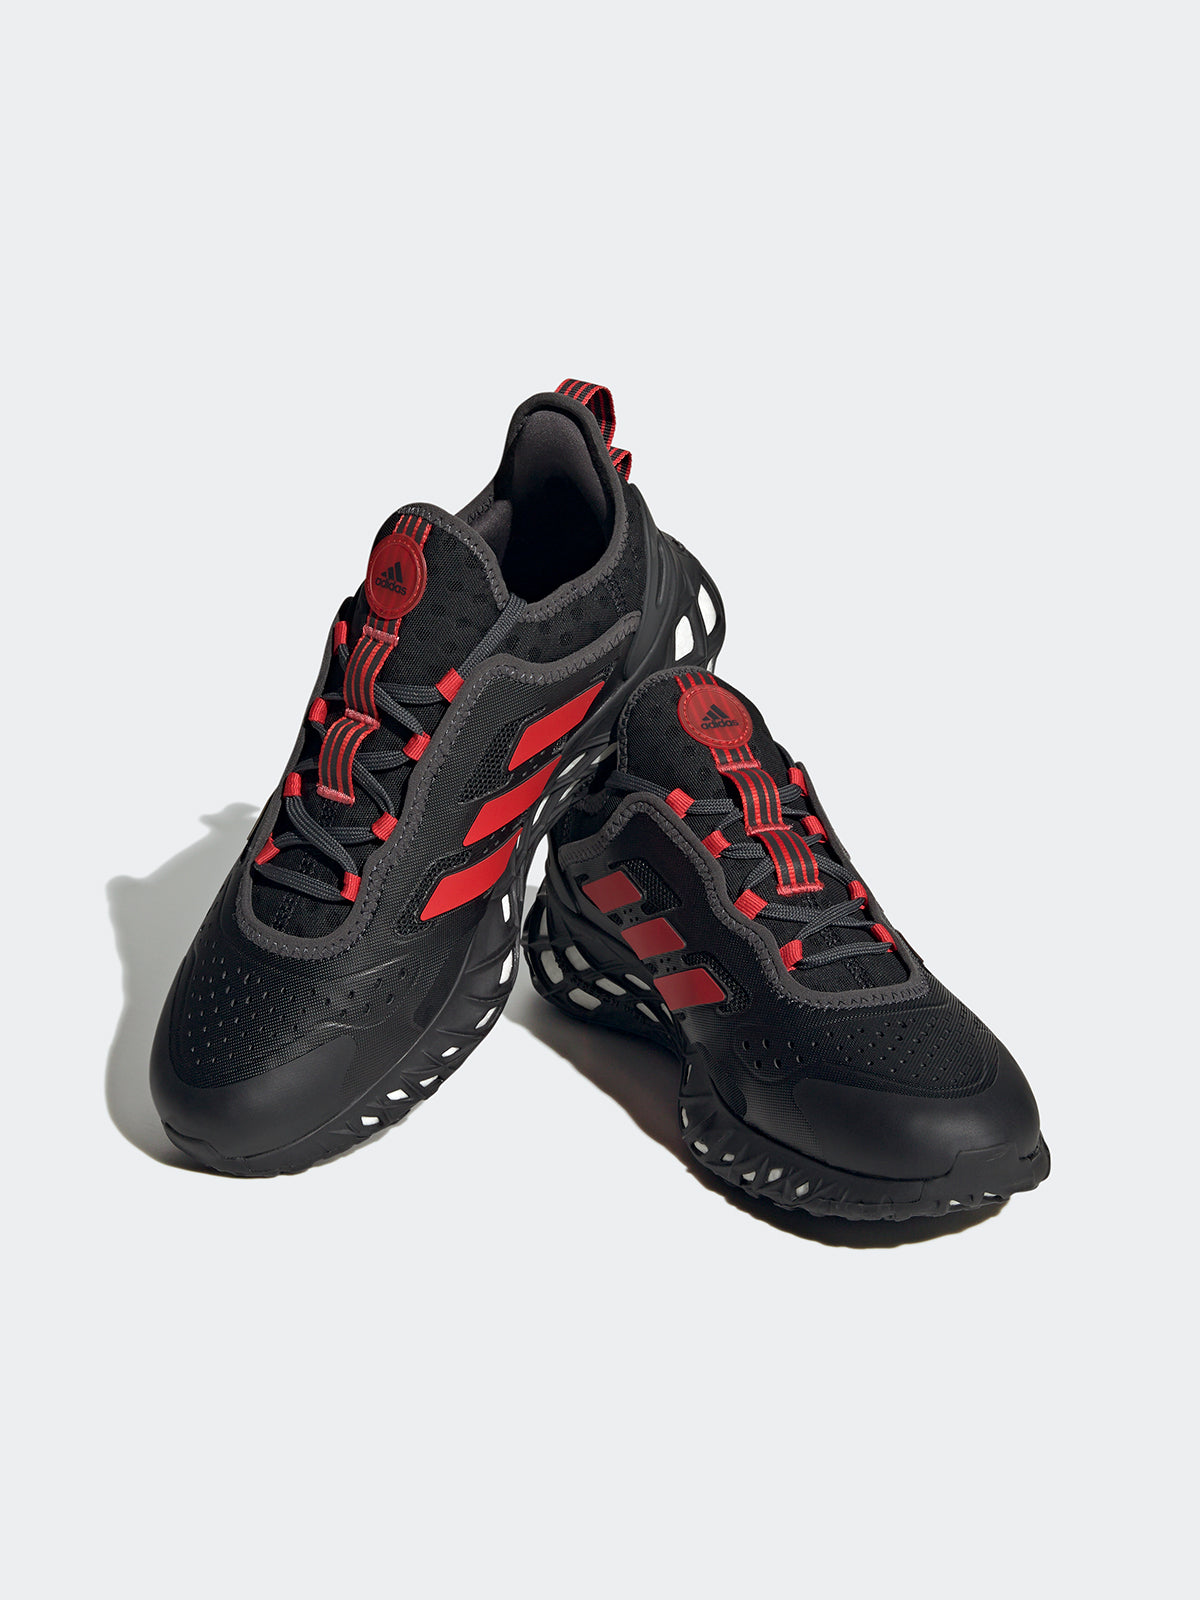 נעלי ריצה WEB BOOST / גברים- adidas performance|אדידס פרפורמנס